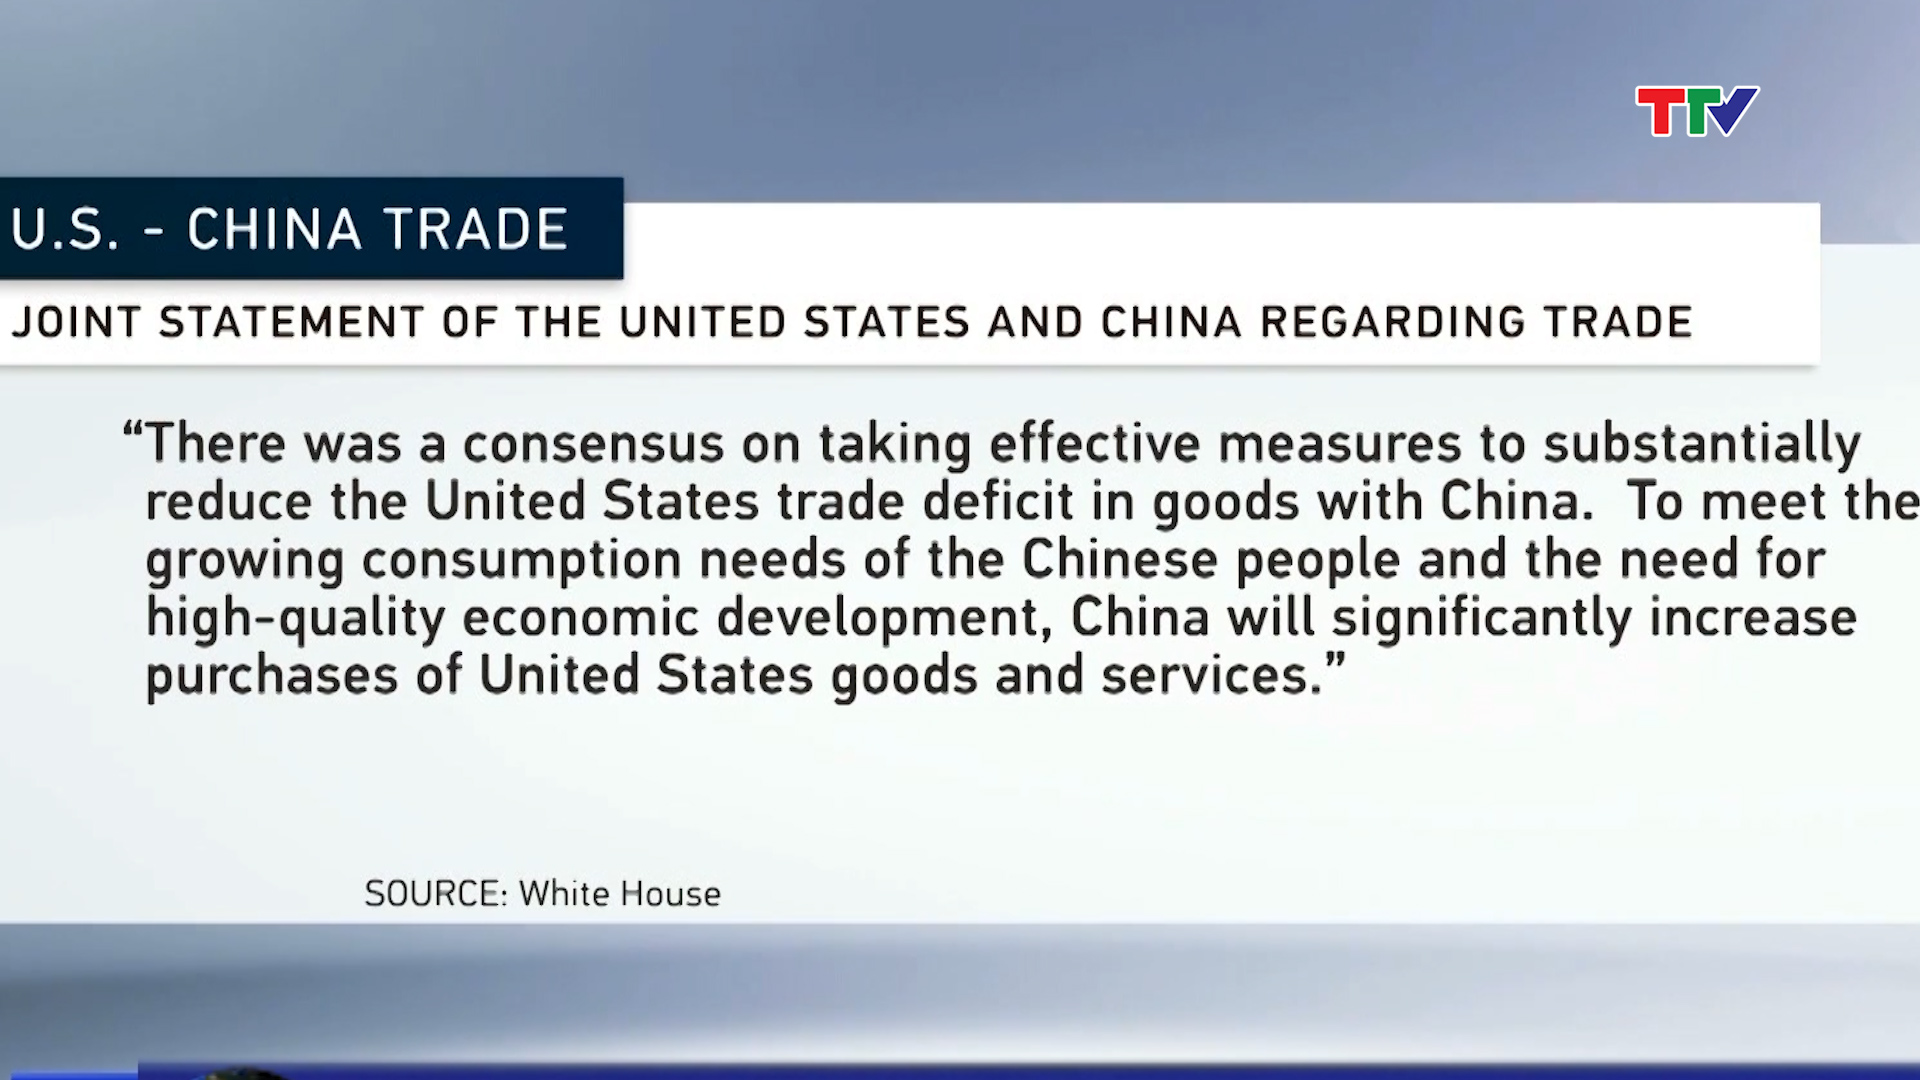 Ngày 19-5, Bắc Kinh và Washington đã ra tuyên bố chung, trong đó hai bên nhất trí rằng Trung Quốc sẽ mua thêm nhiều hàng hóa Mỹ để giảm thâm hụt thương mại.